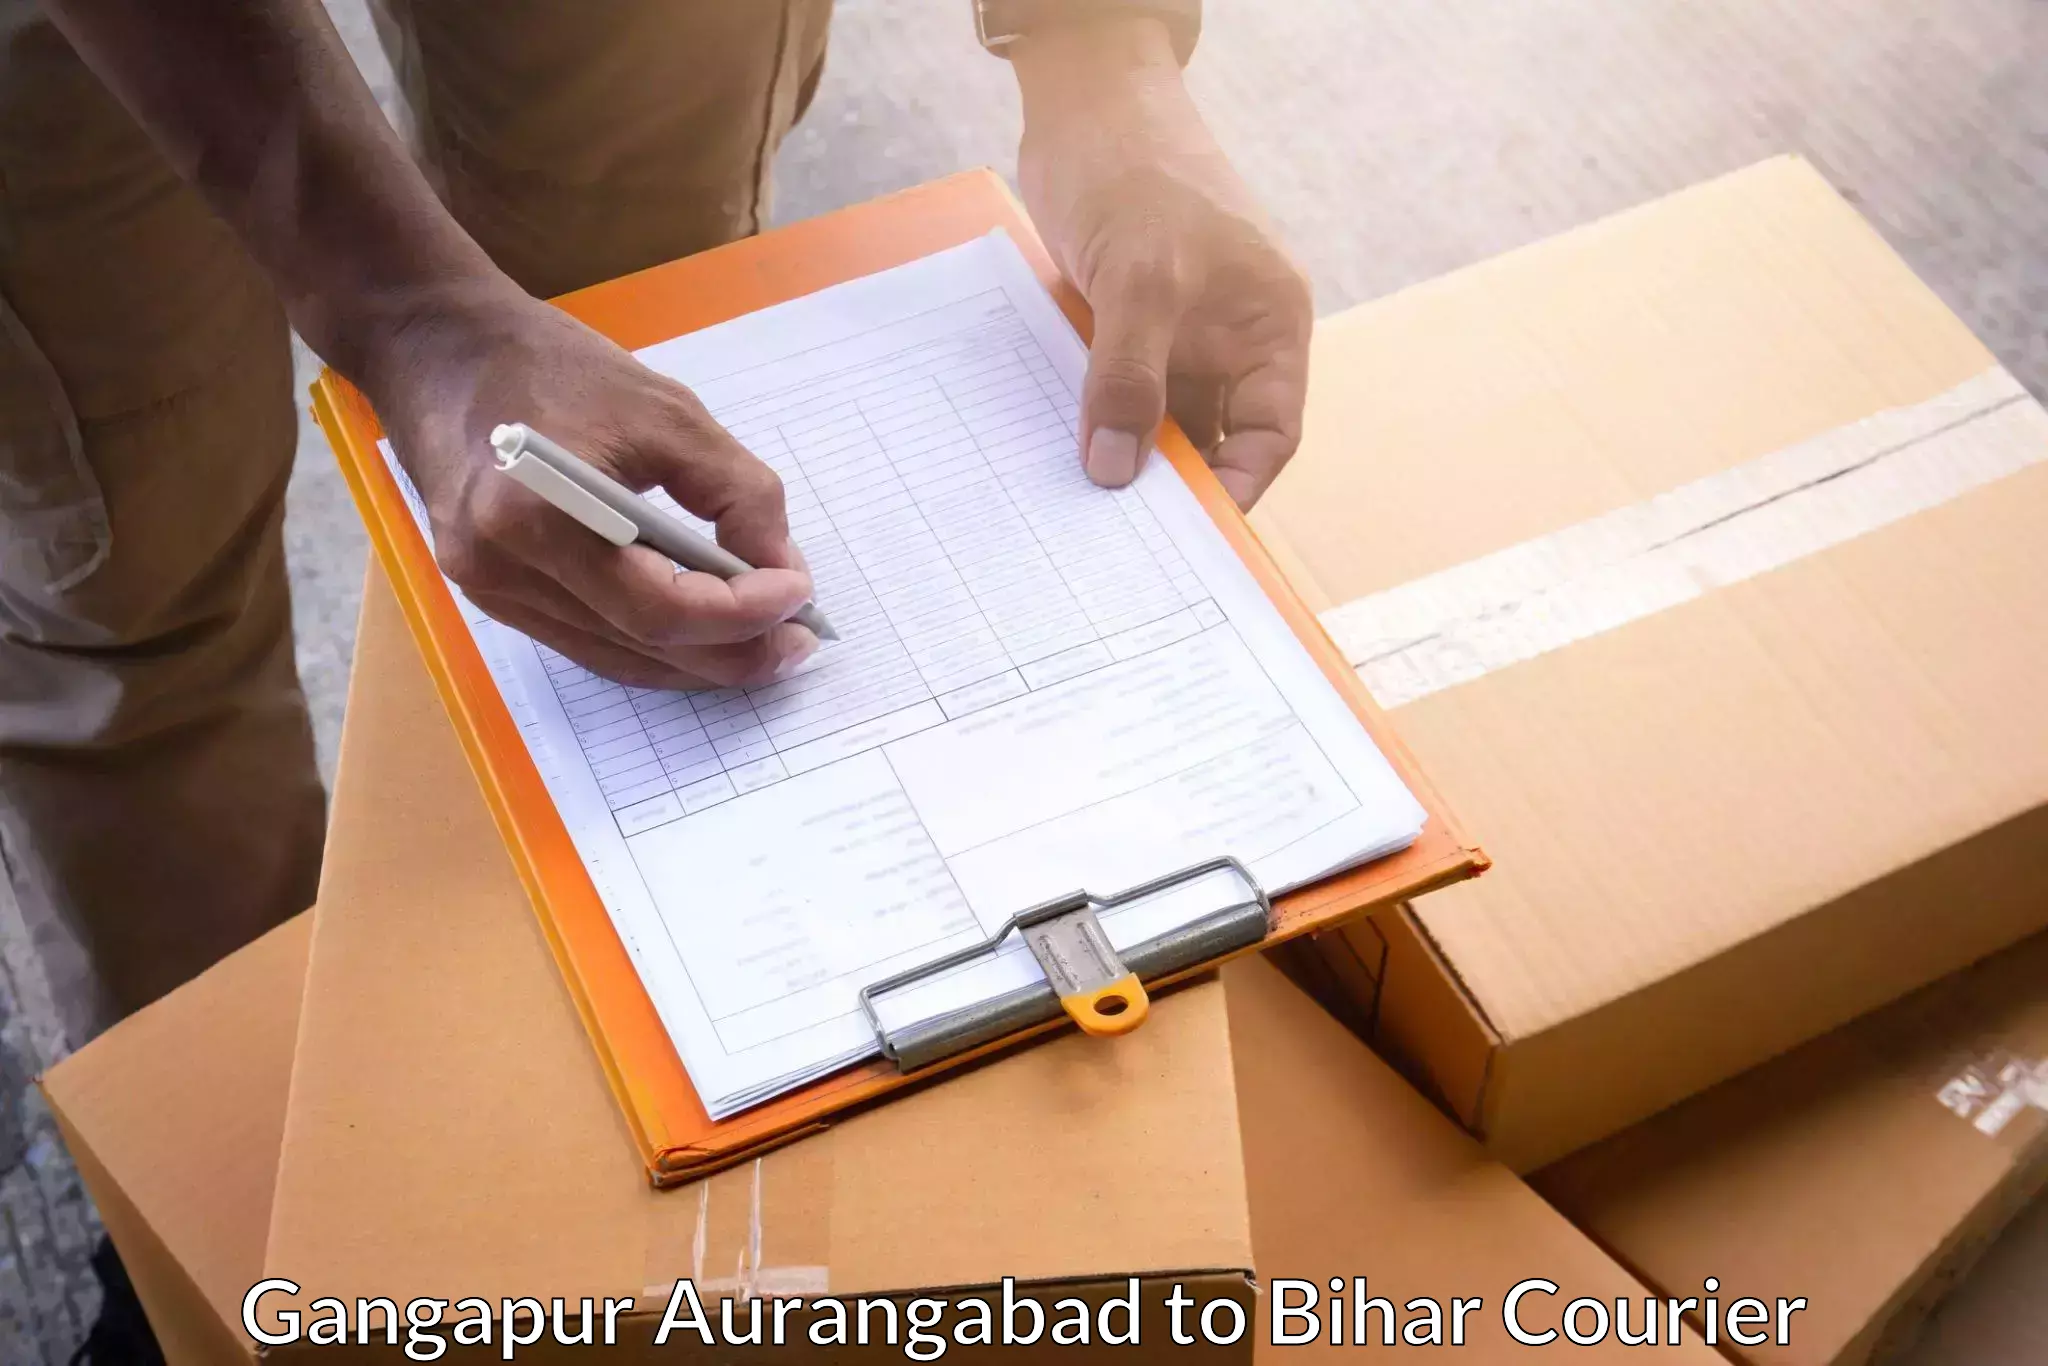 Global parcel delivery Gangapur Aurangabad to Bihar